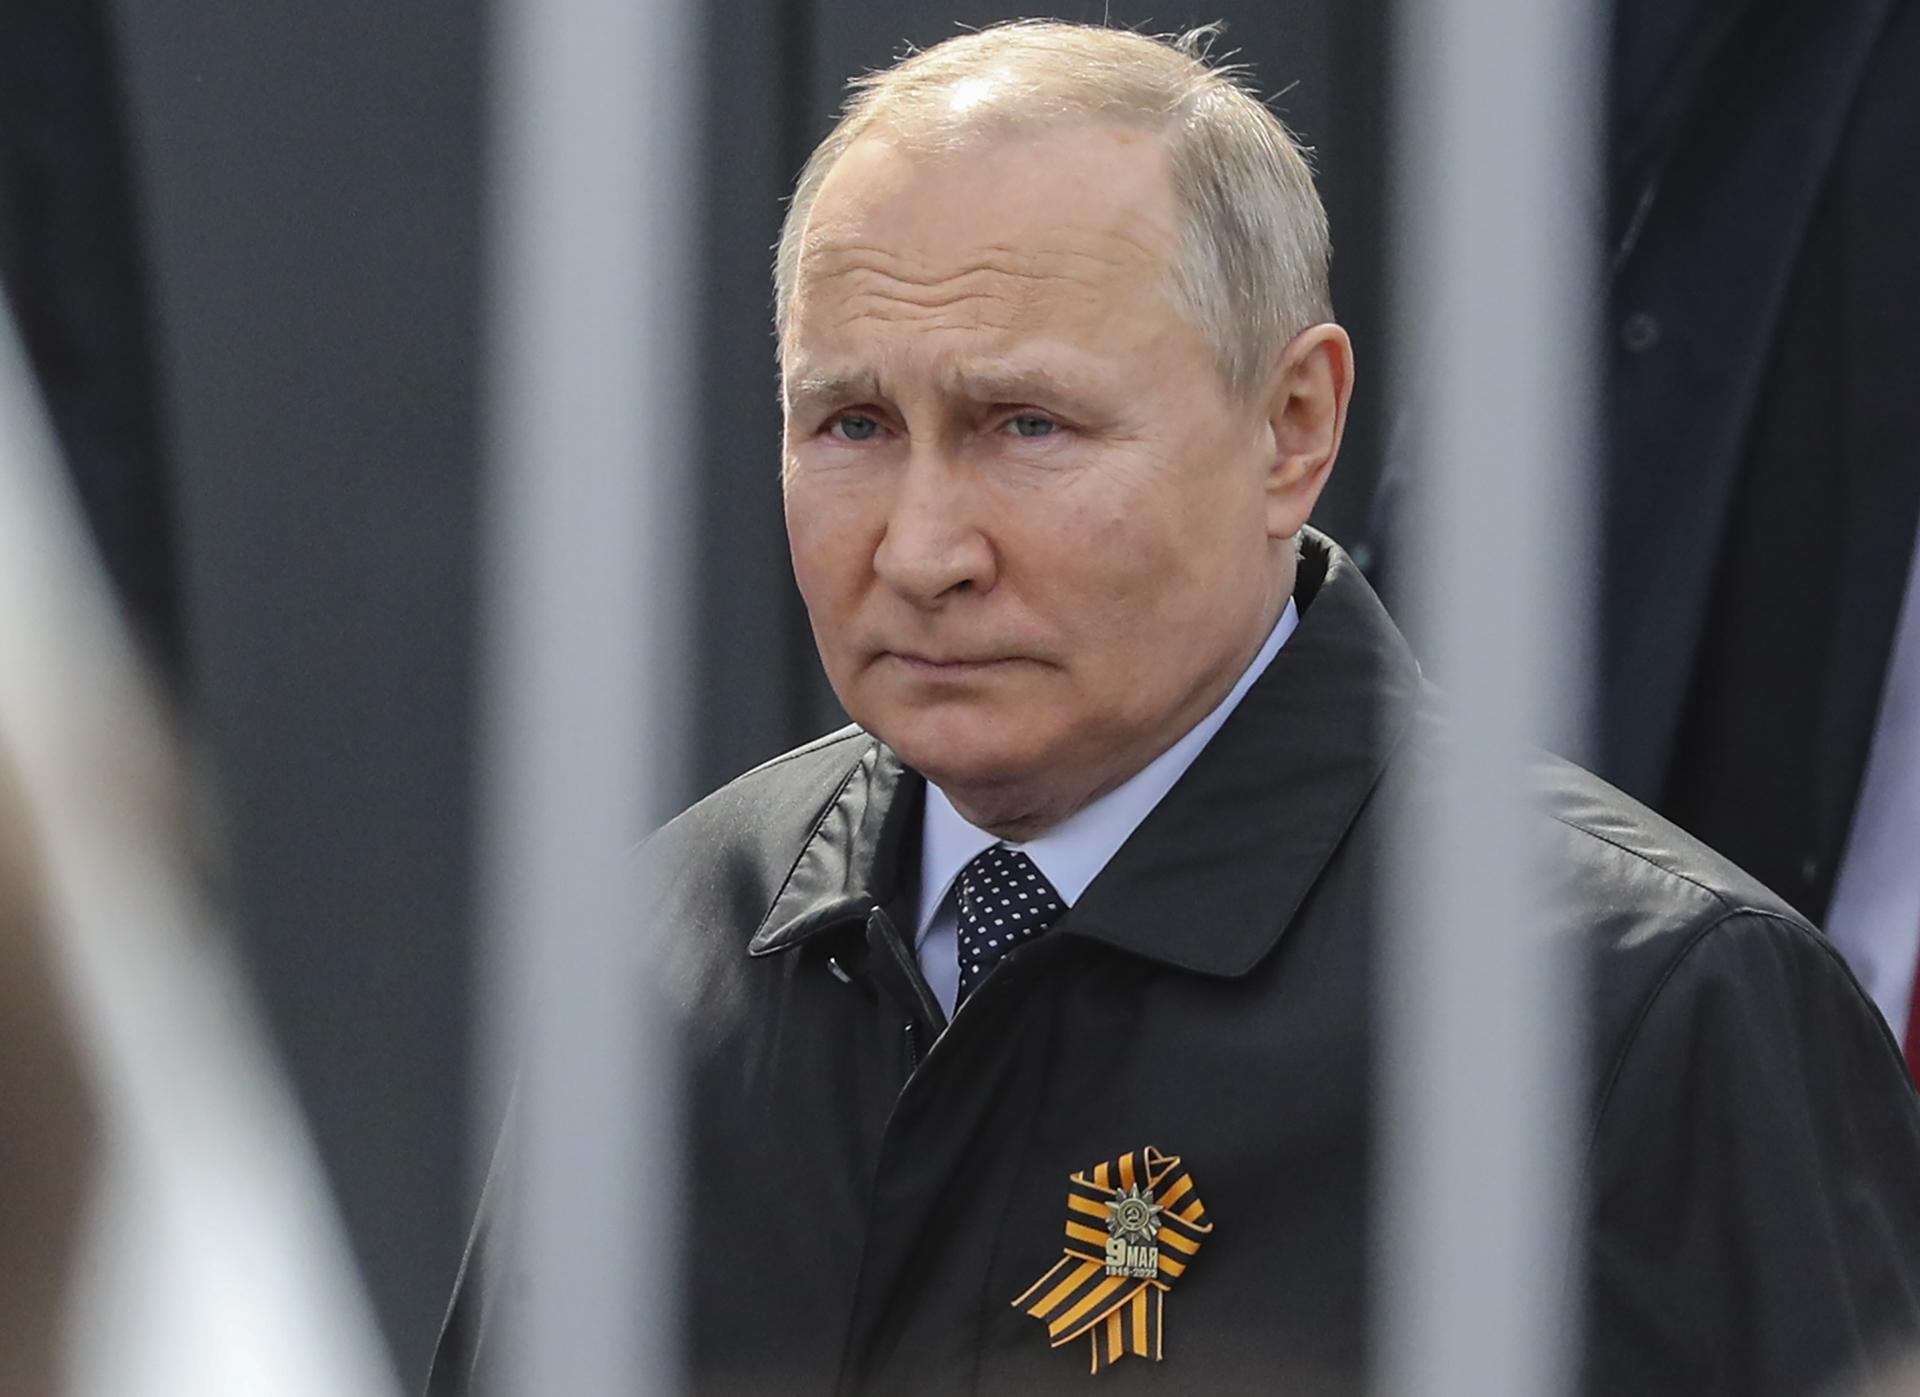 La CPI emitió una orden de detención contra Putin por “deportación ilegal” de niños